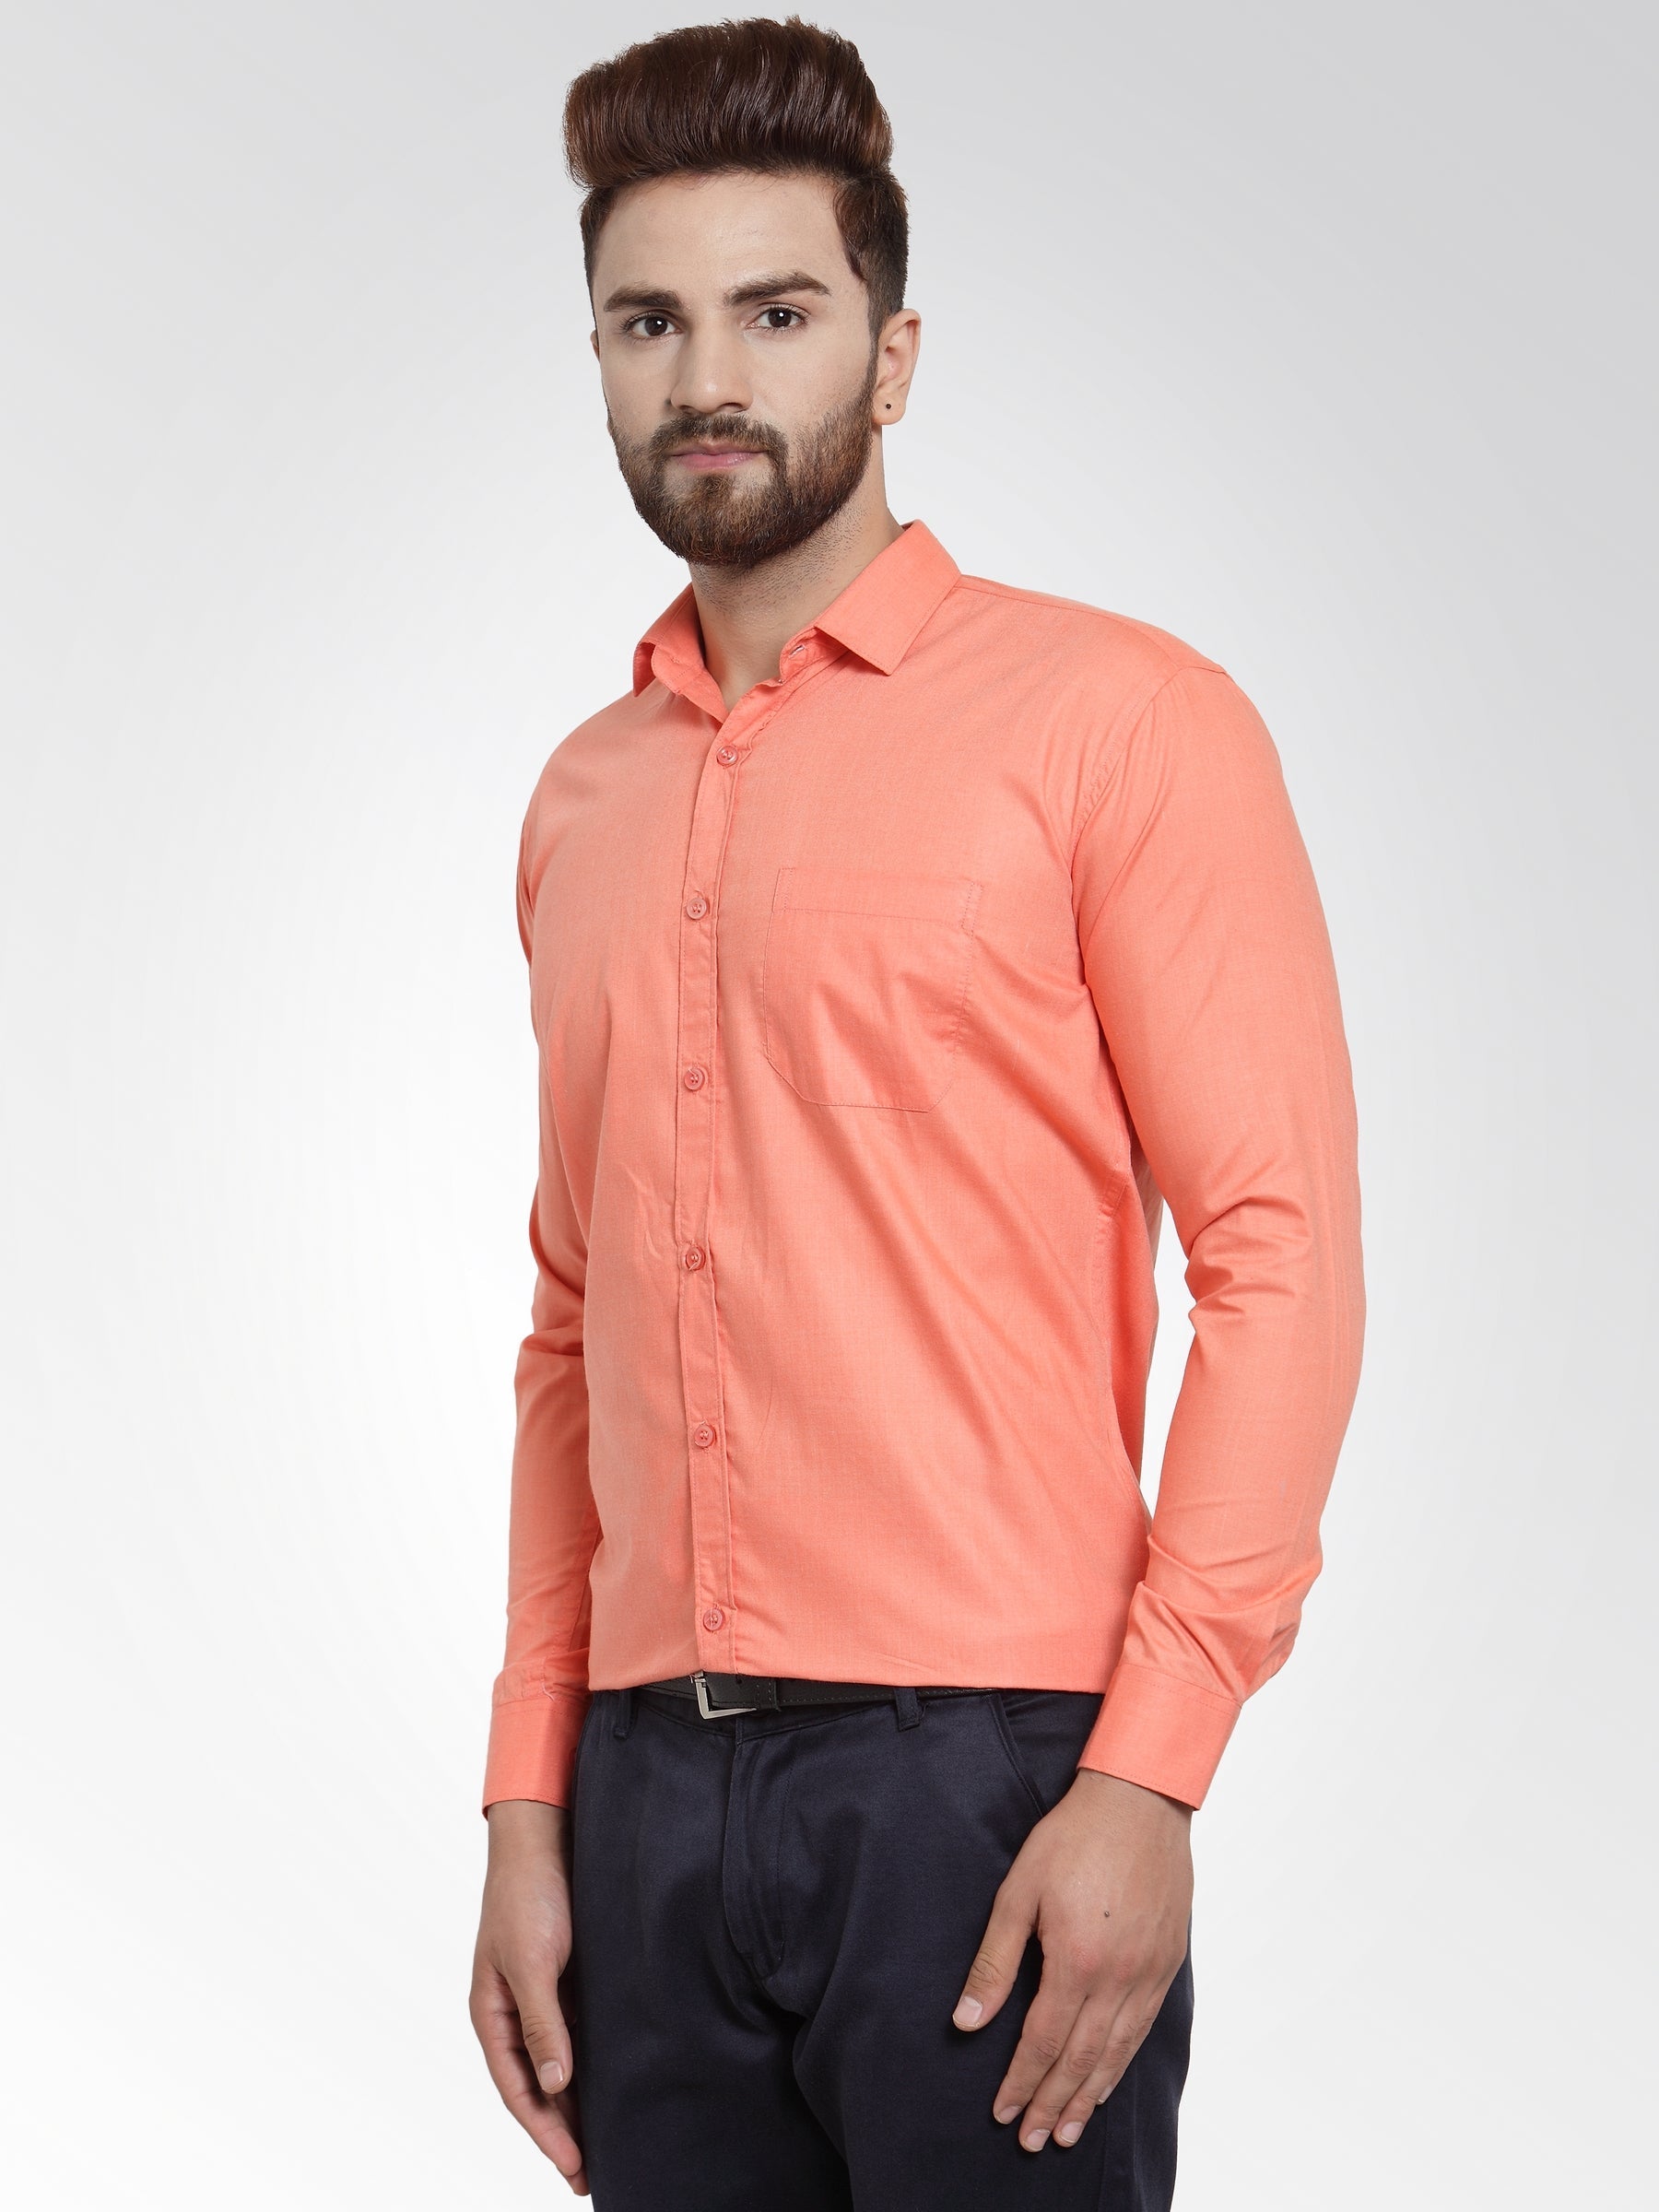 Men's Cotton Solid Starfish Orange Formal Shirt's ( SF 361Starfish-Orange ) - Jainish